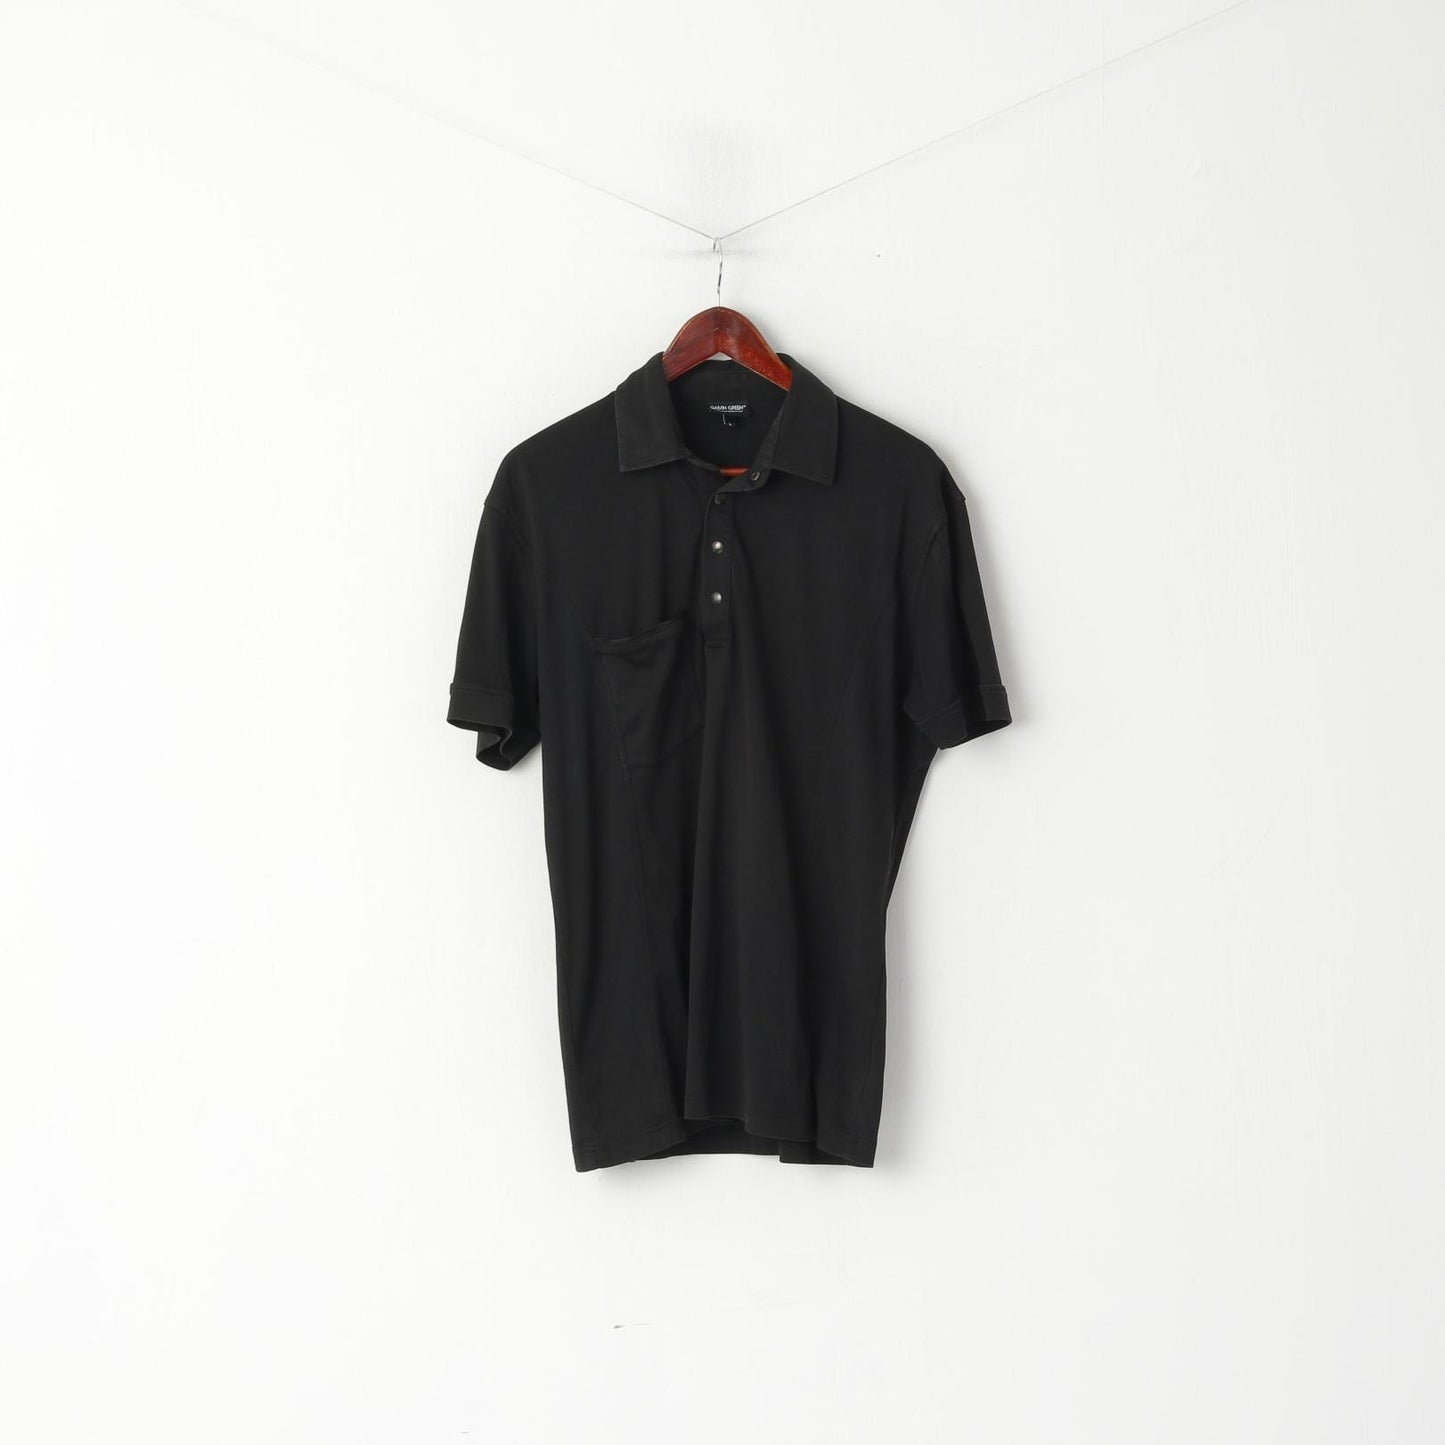 Galvin Green Men L Polo Shirt Black Cotton Pocket Golf Activewear Snap Neck Top